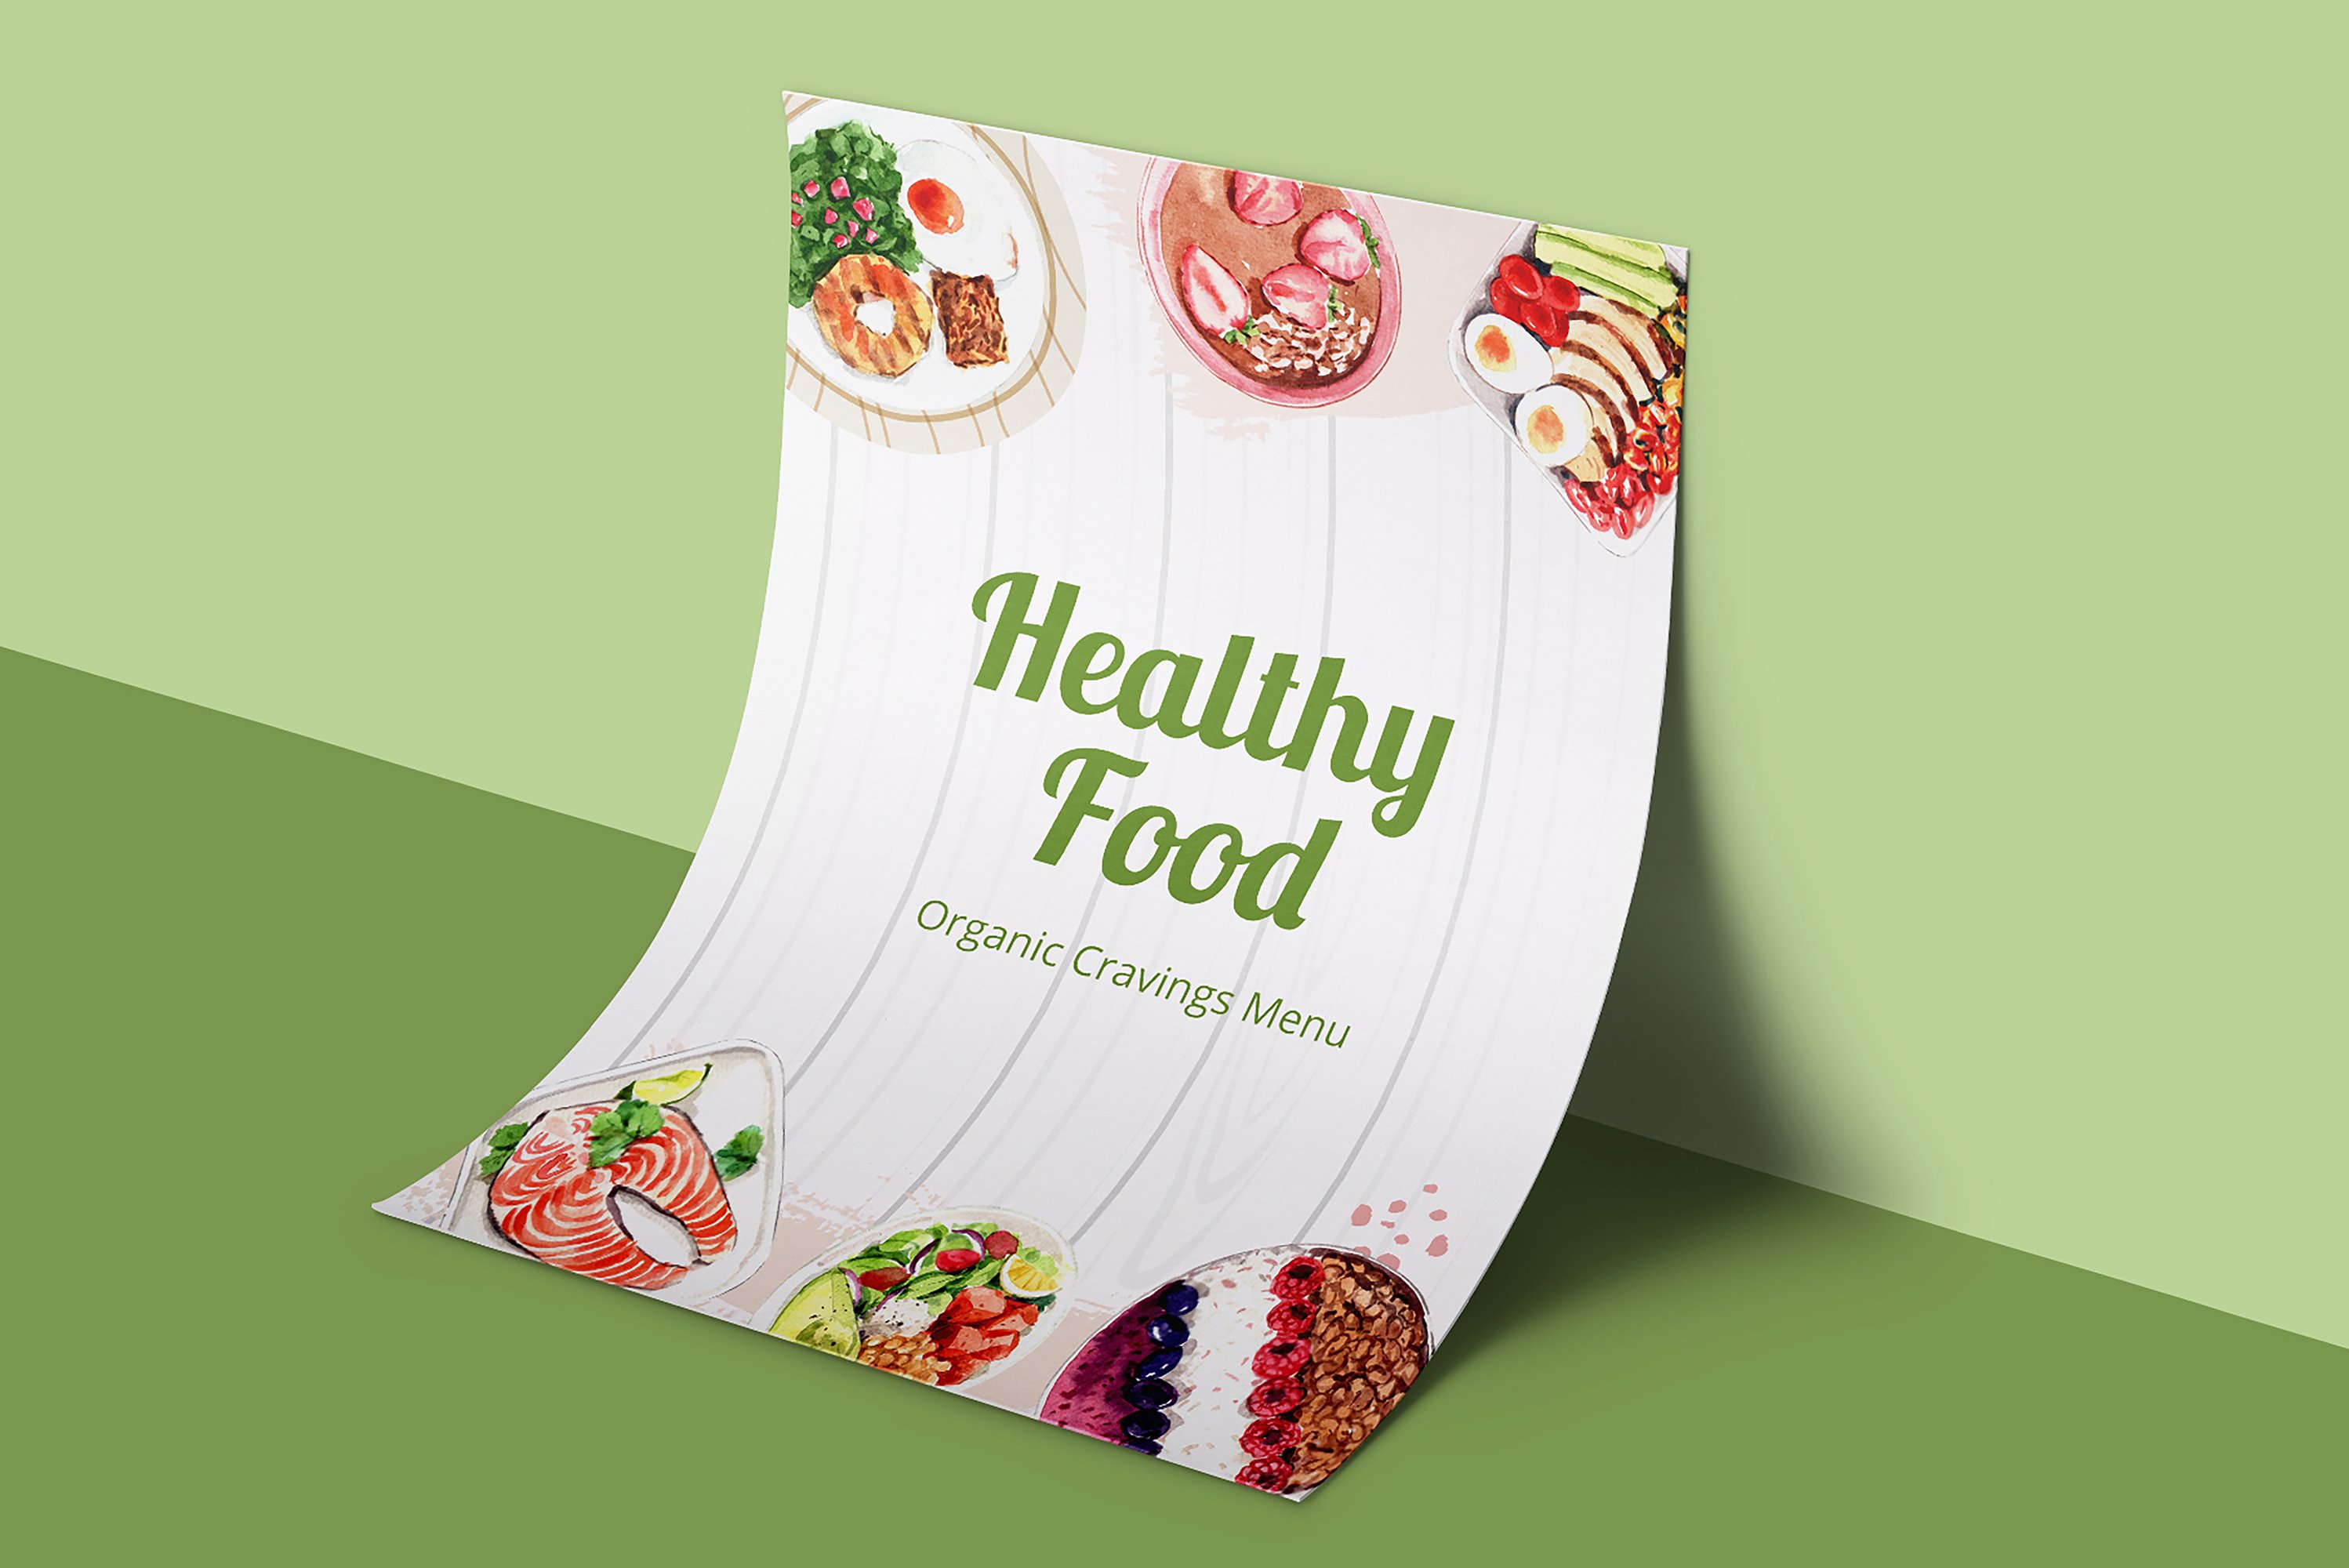 Healthy Food Clean Food Watercolor